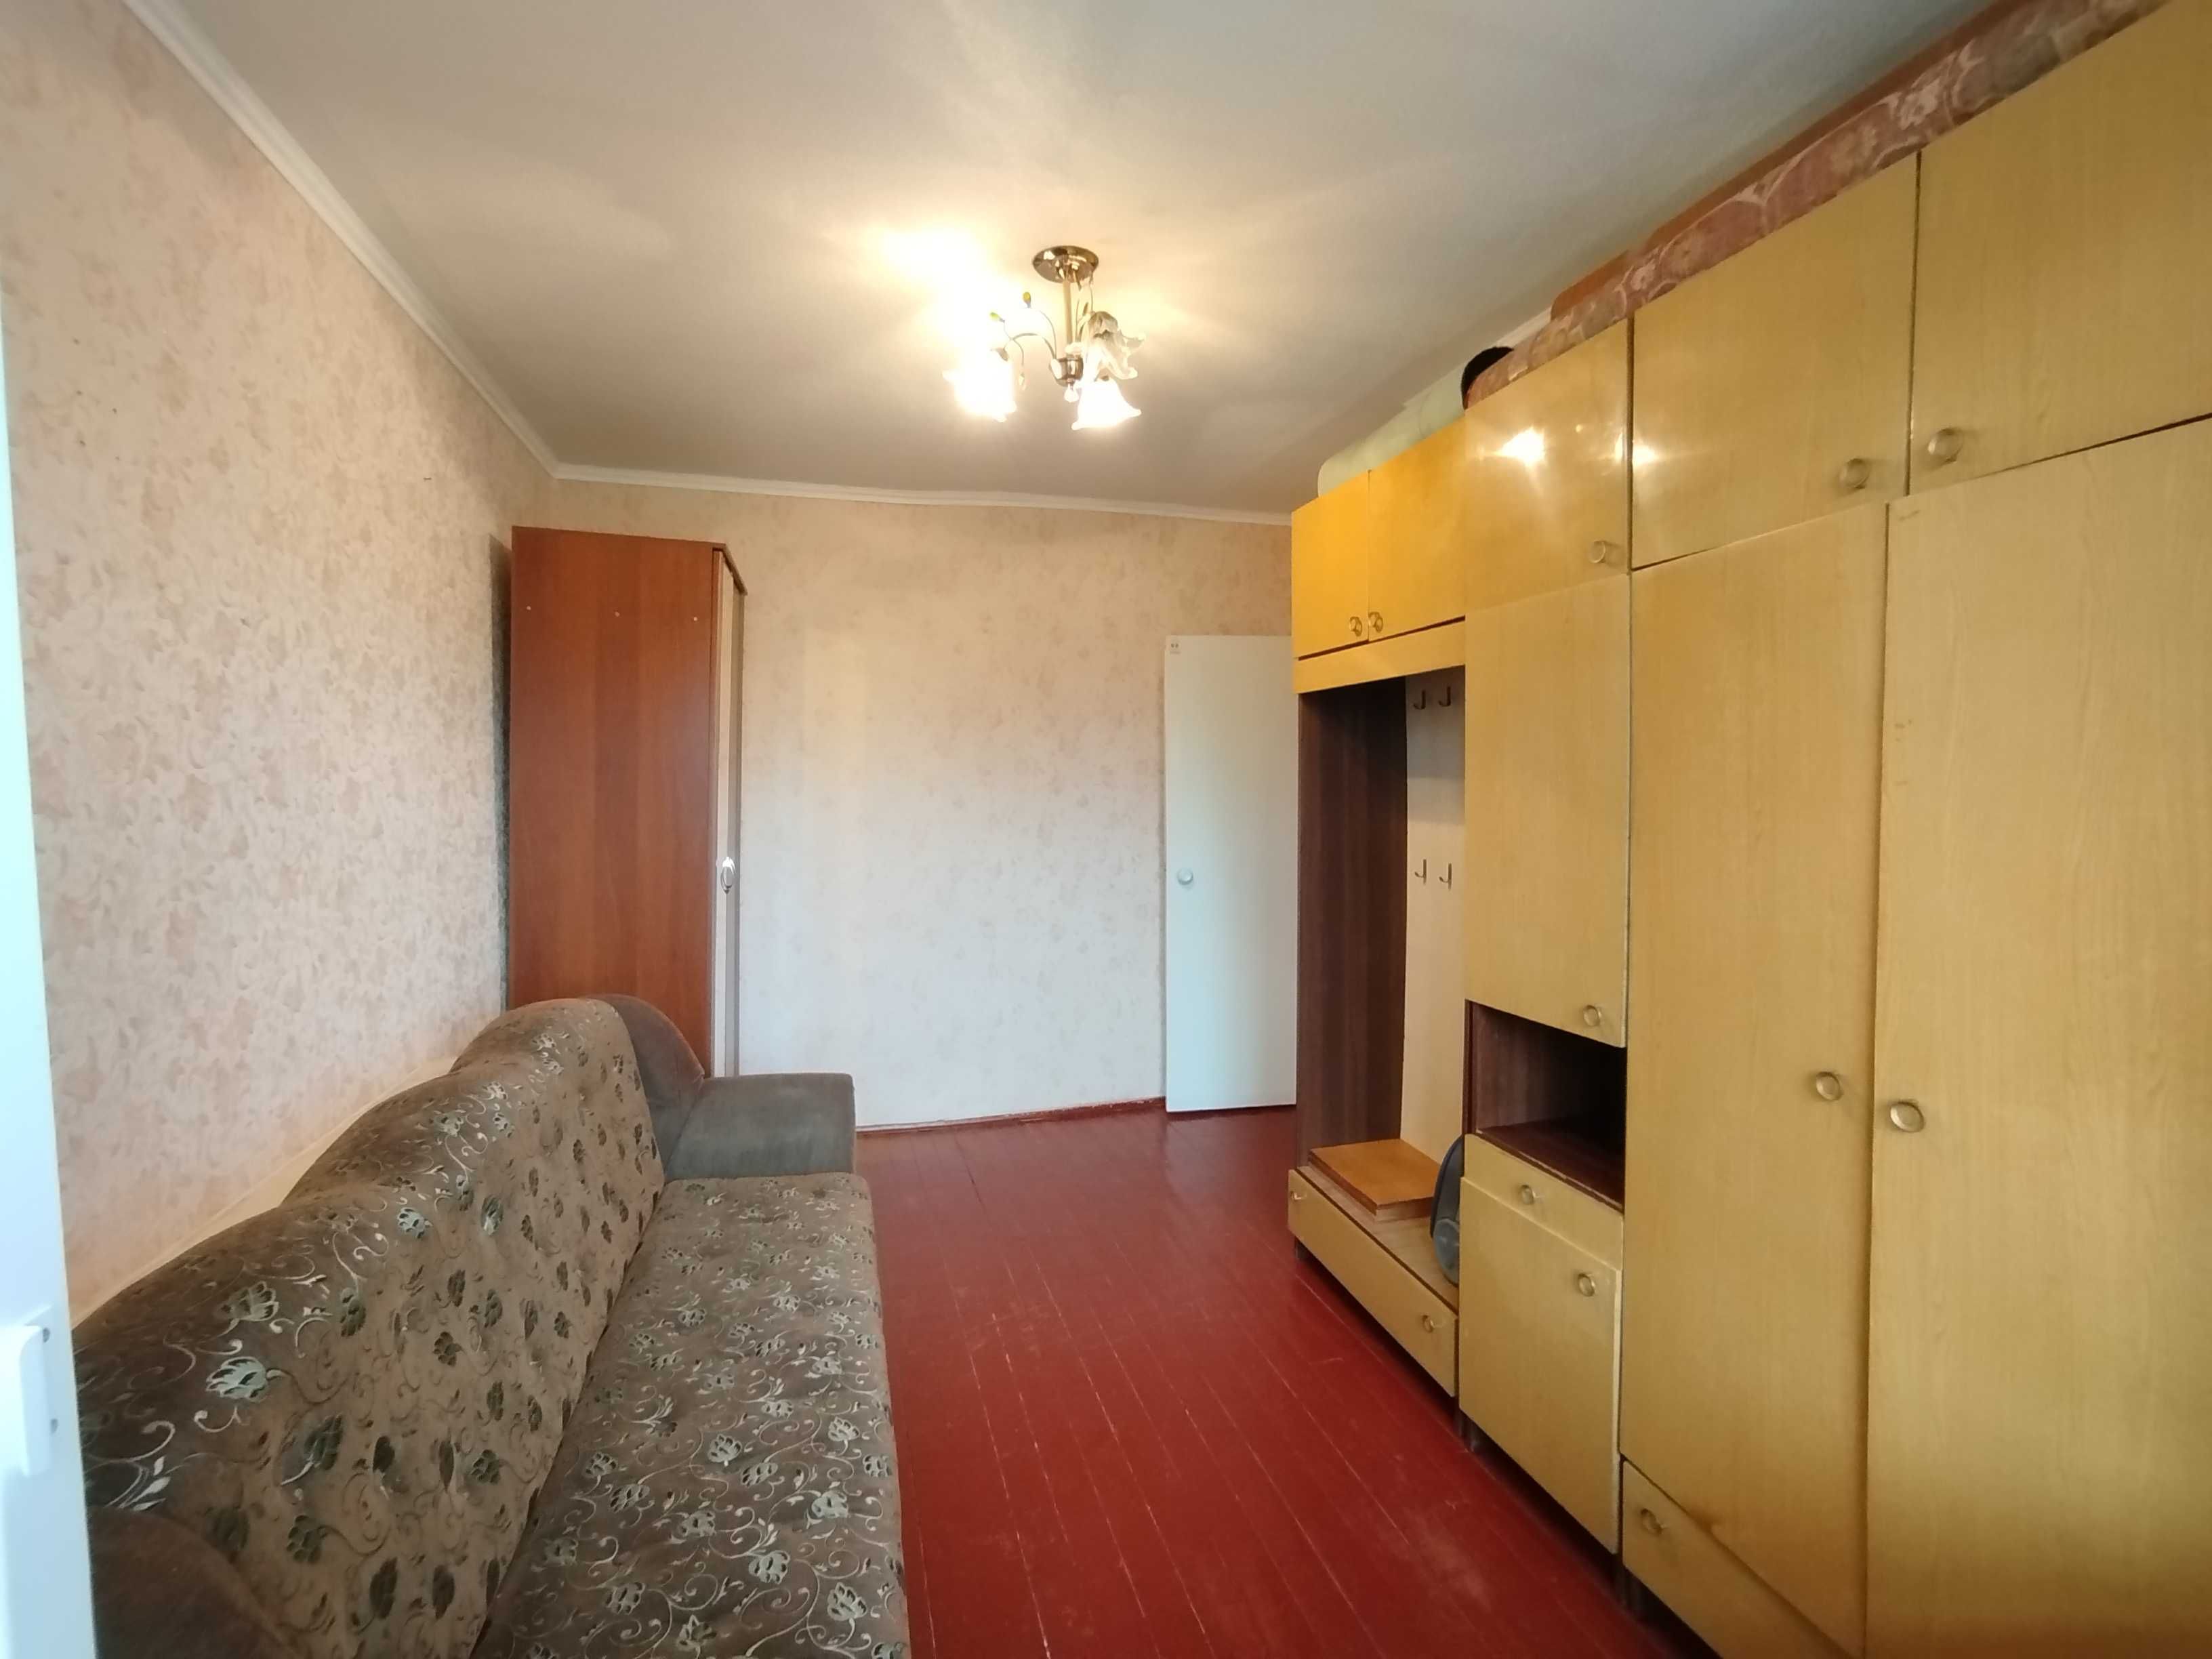 3-кімнатна квартира в Малині, вул. Героїв Малинського підпілля, 1й пов